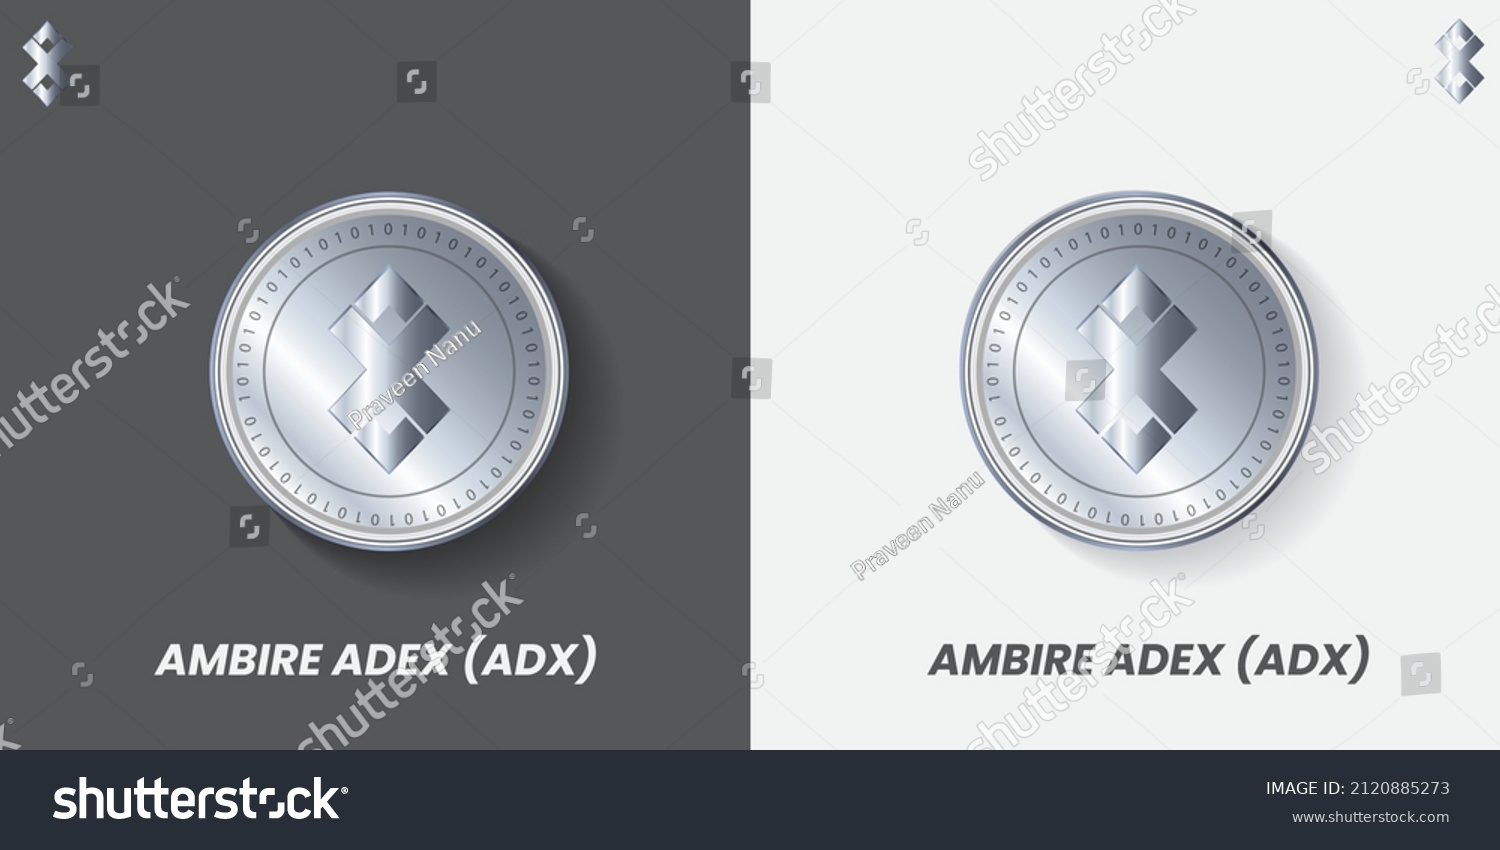 Adex crypto coin clear crypto isakmp peer